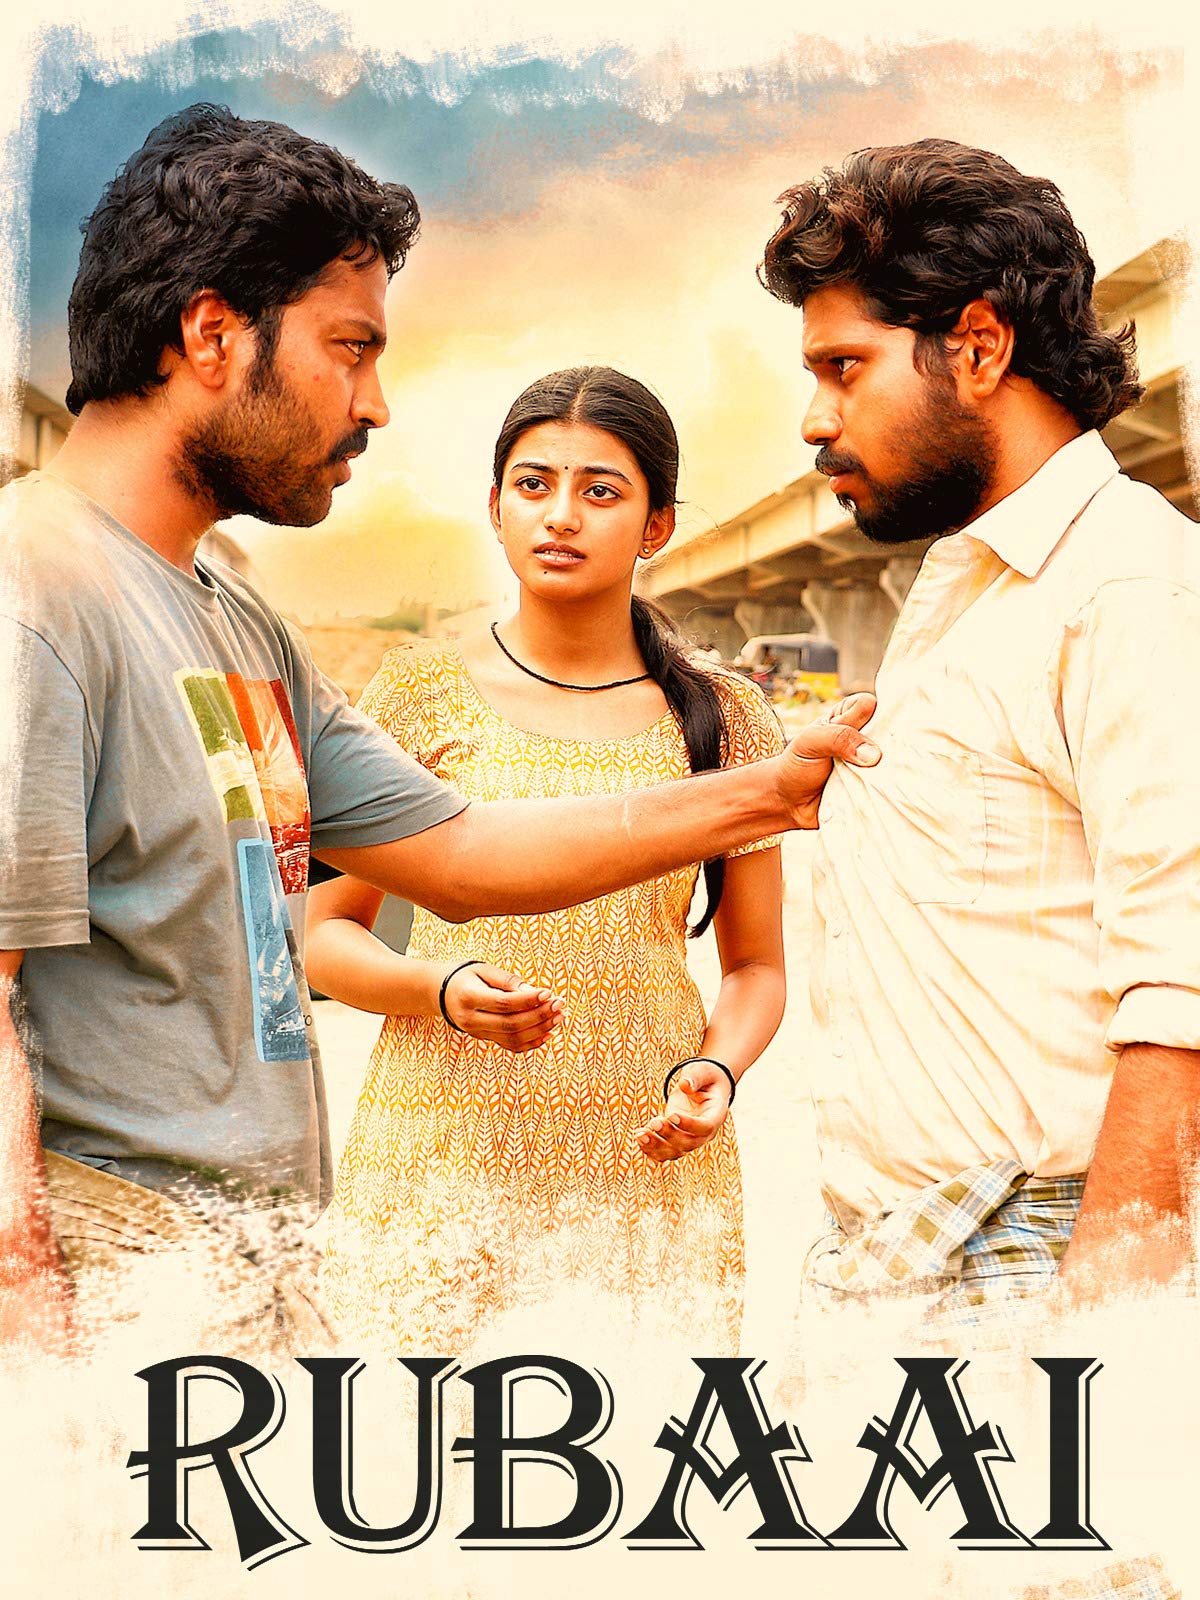 Rubaai (2017 film)